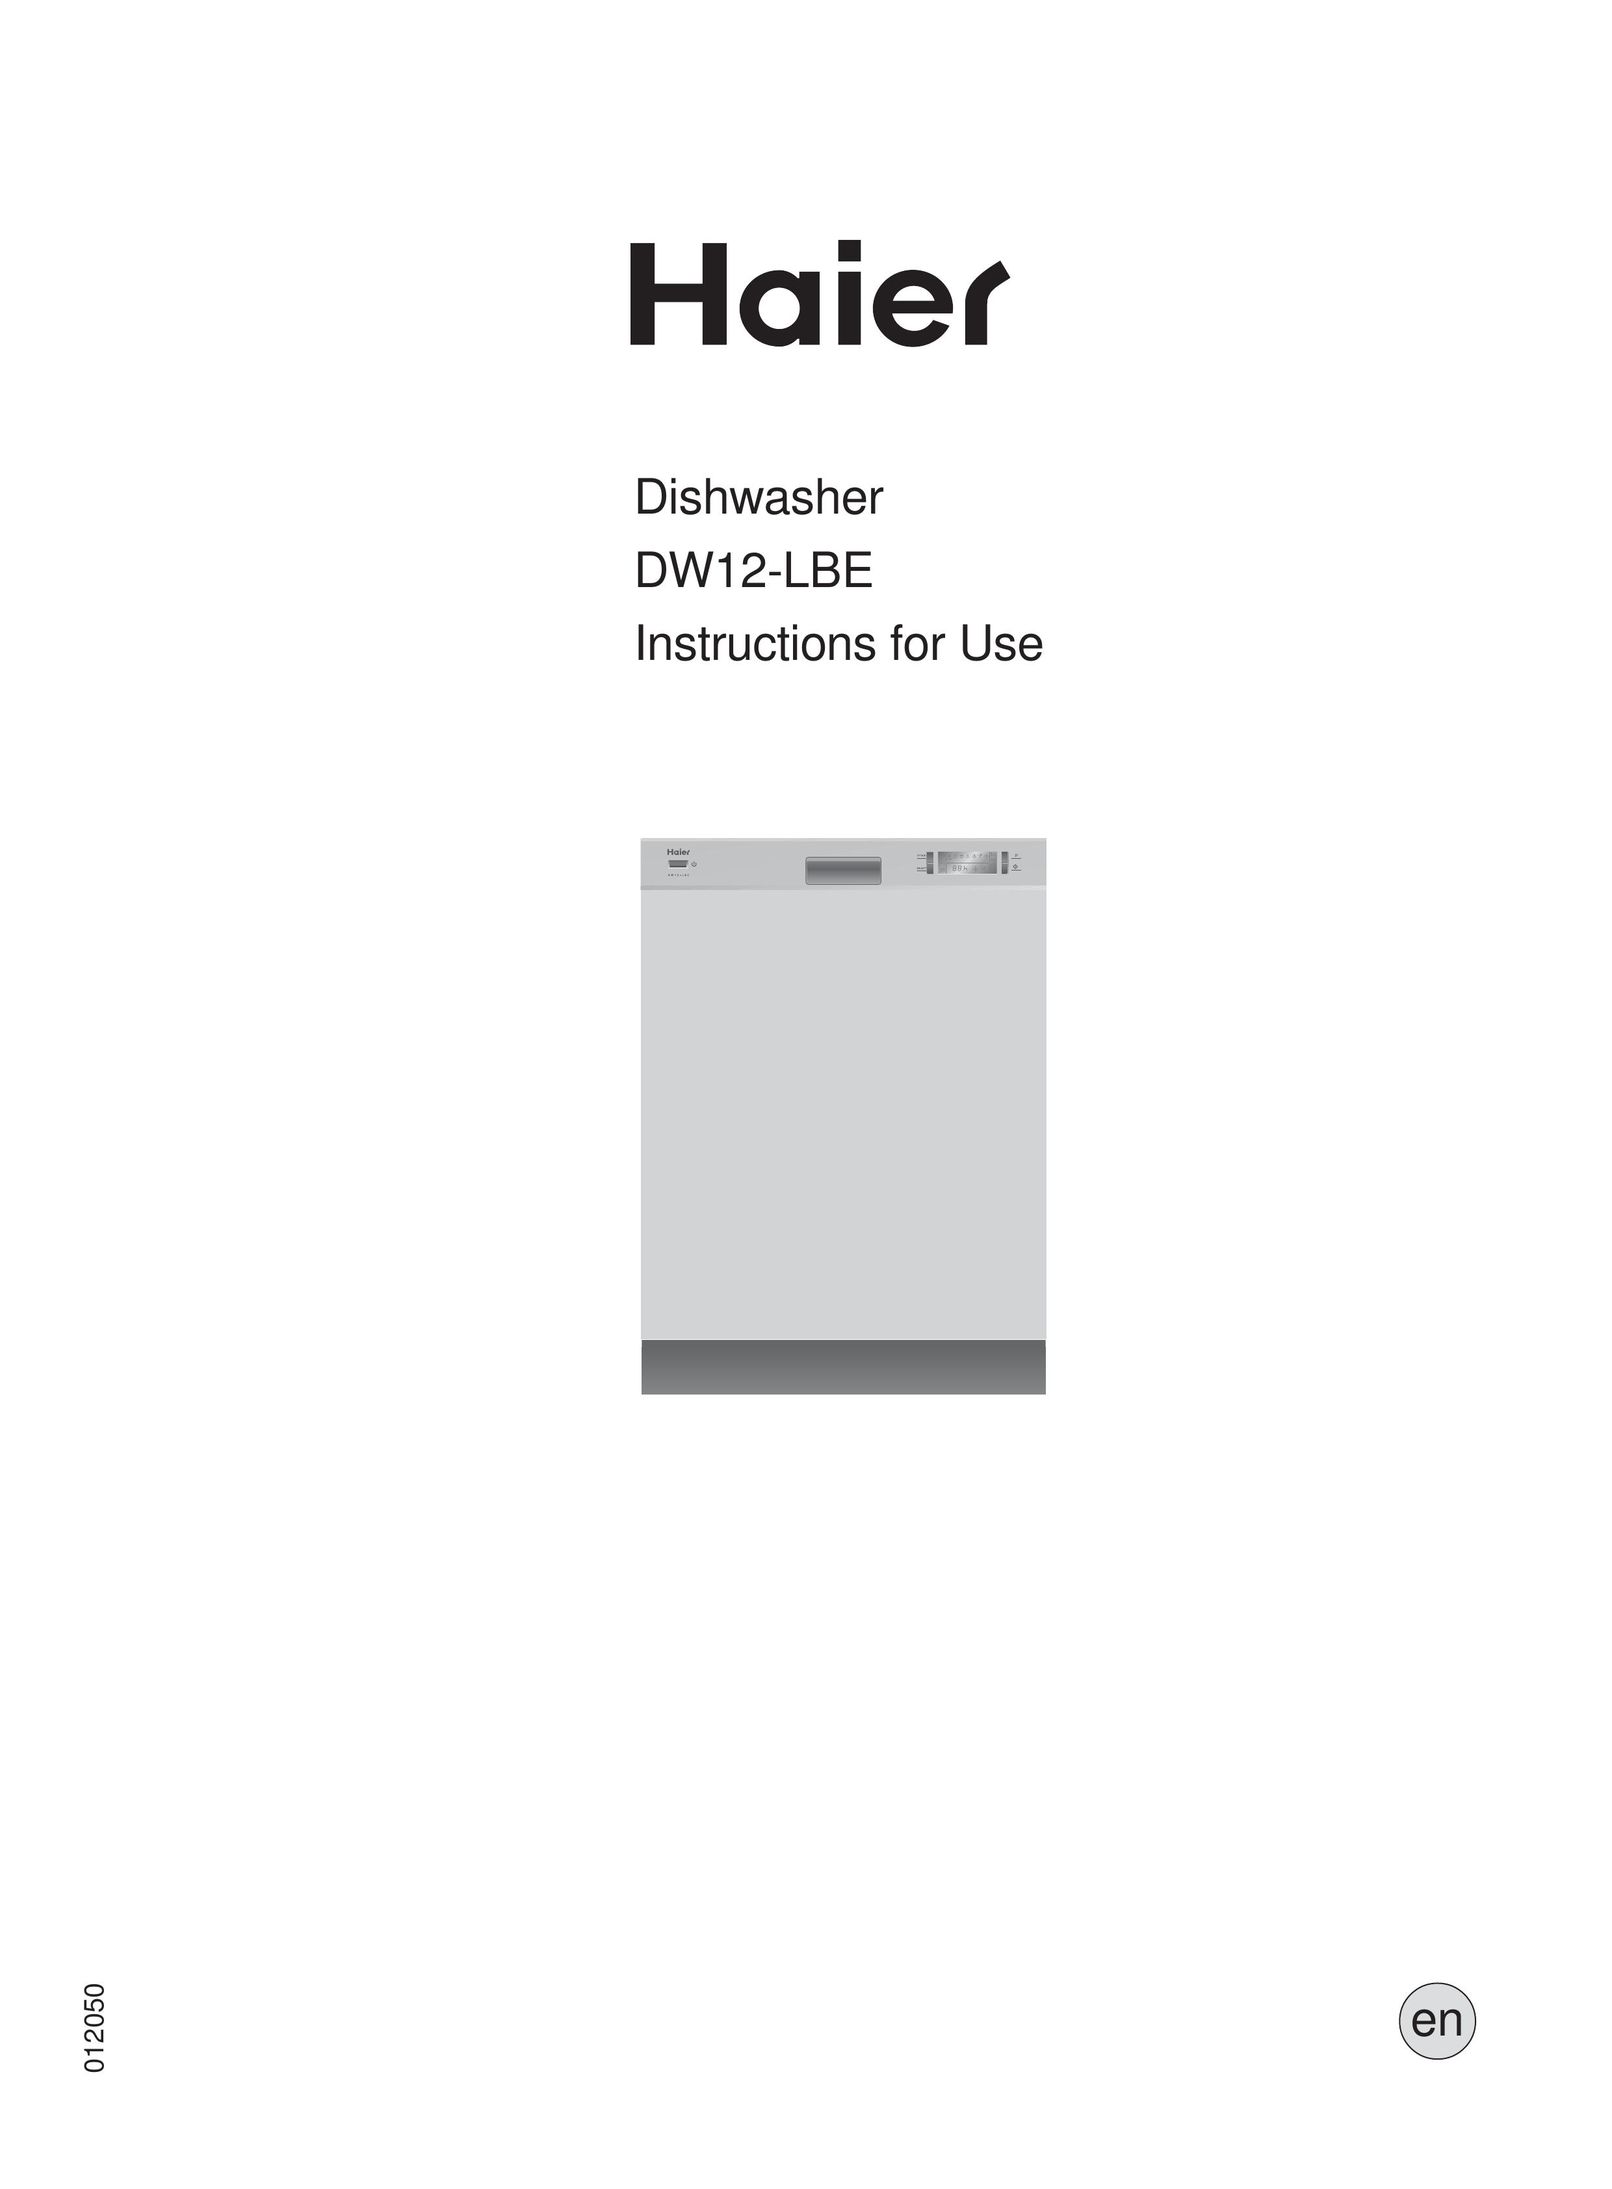 Haier DW12-LBE Dishwasher User Manual